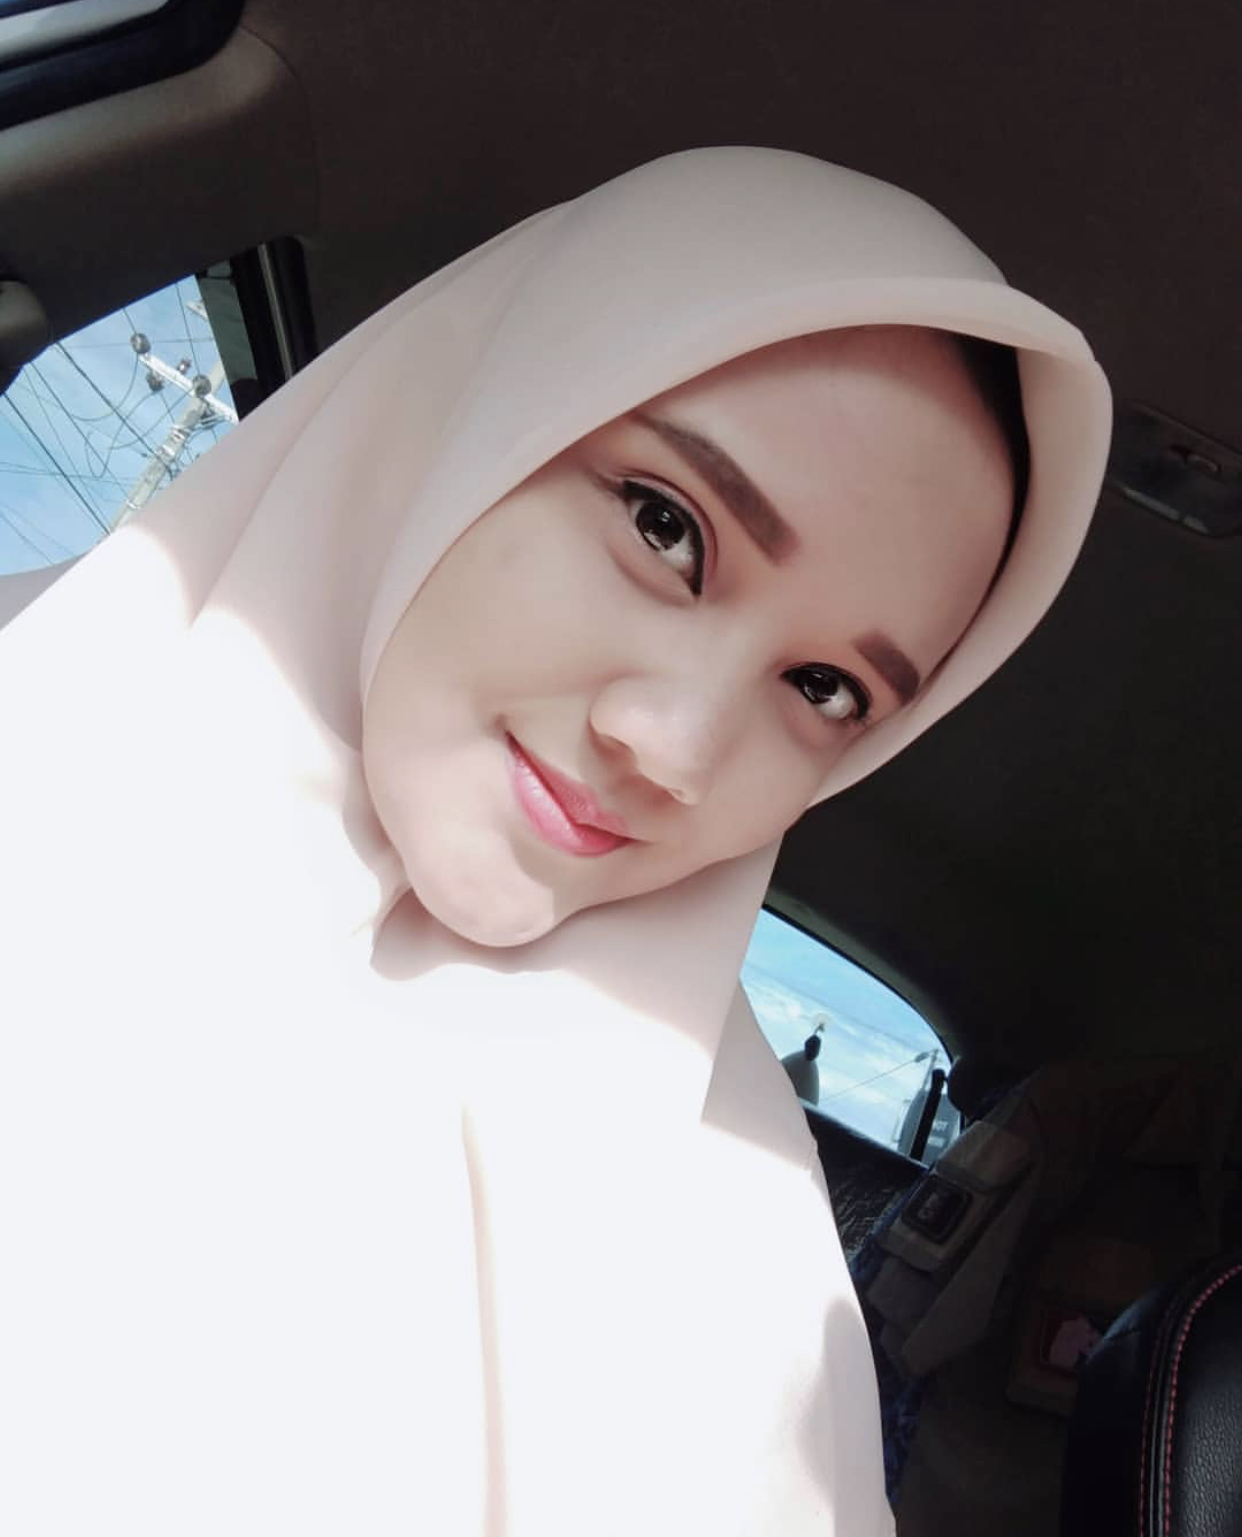 Yanti93 - Gadis Akhwat Muslimah Surakarta 27 tahun Mencari Kekasih/Calon suami Perjaka atau Duda (bersedia poligami) - SatukanCinta